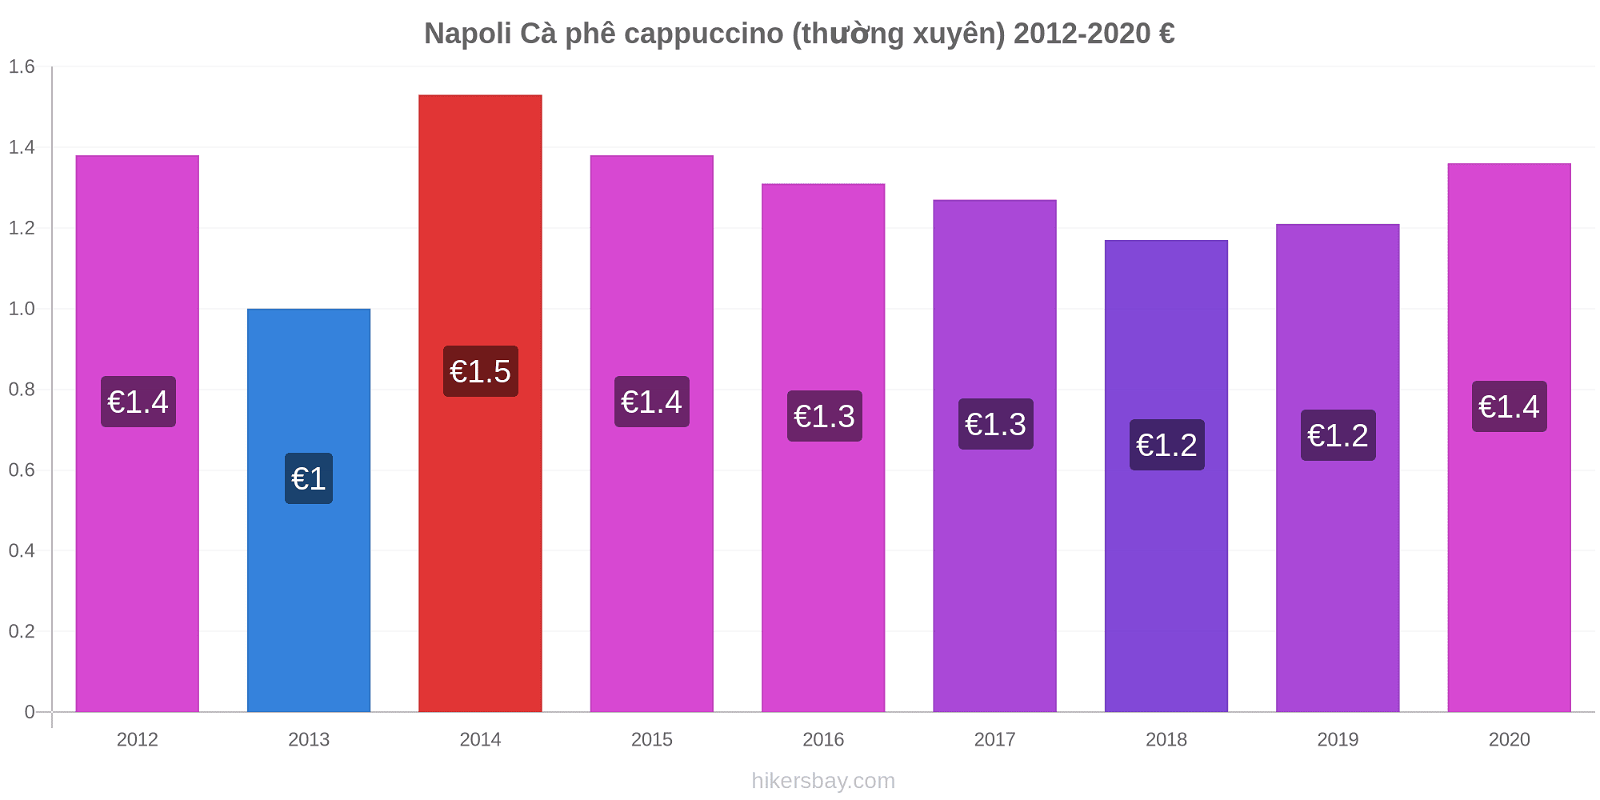 Napoli thay đổi giá Cà phê cappuccino (thường xuyên) hikersbay.com